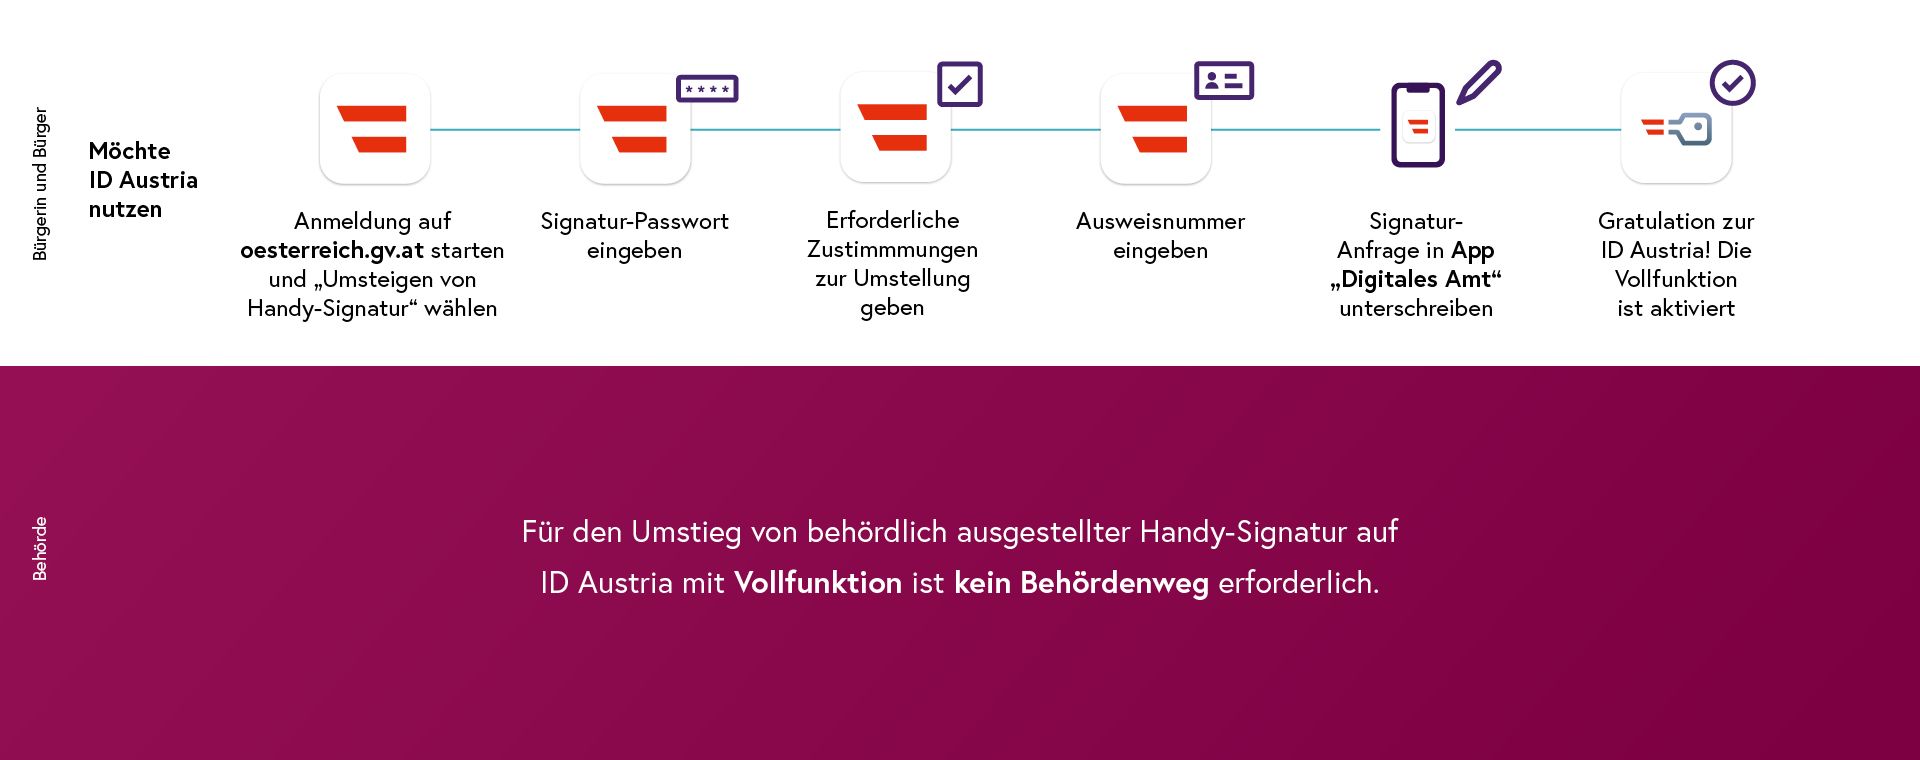 Umstieg im Web von Handy-Signatur auf ID Austria mit Digitales Amt